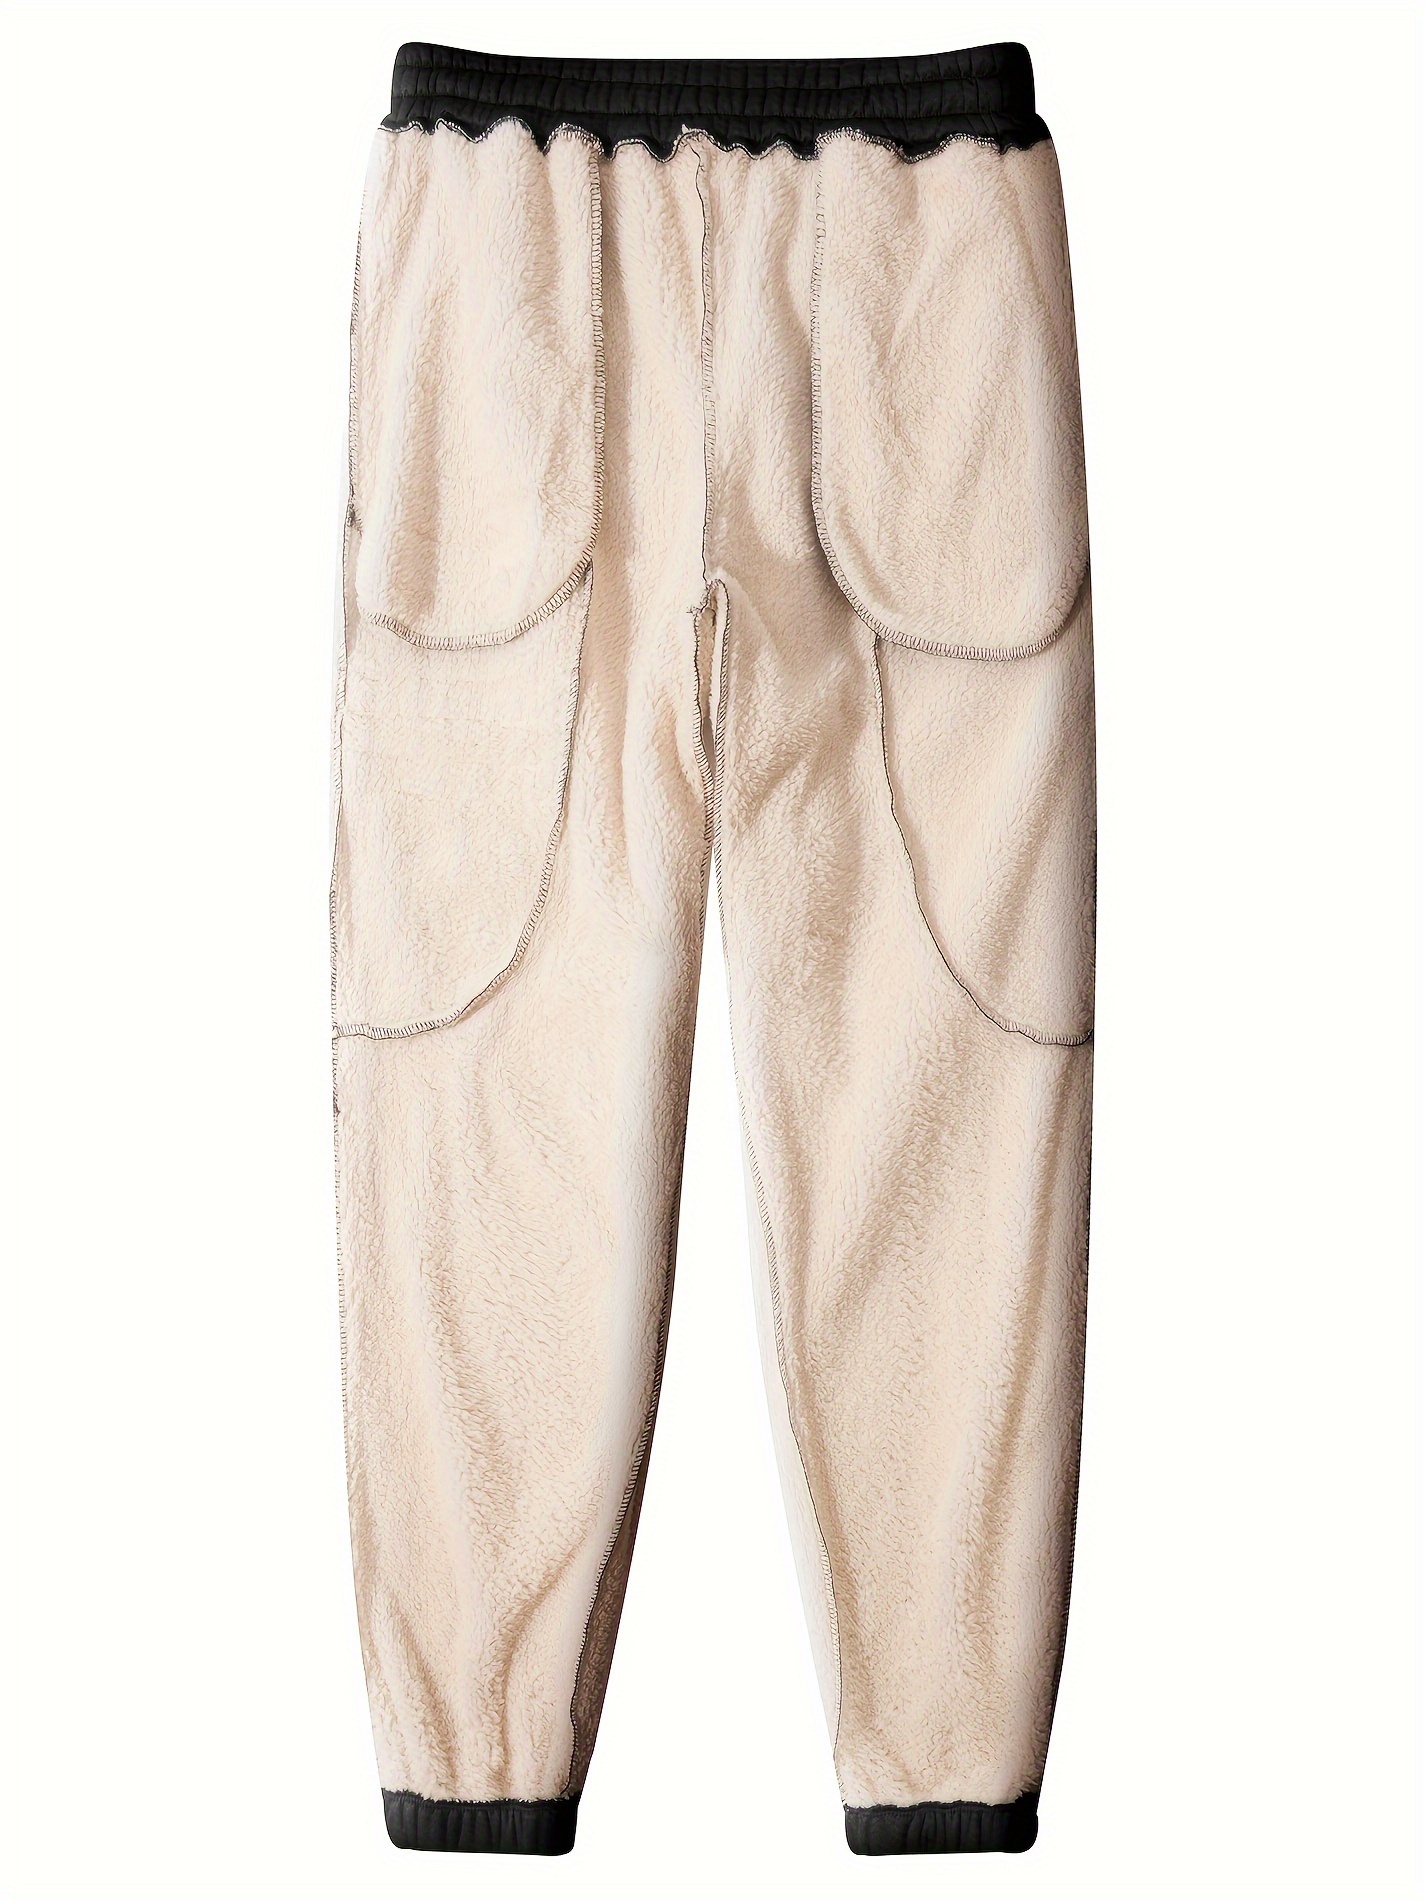 Acheter Pantalon doux athlétique doublé polaire pour homme, jogging épais,  ample et chaud, hiver